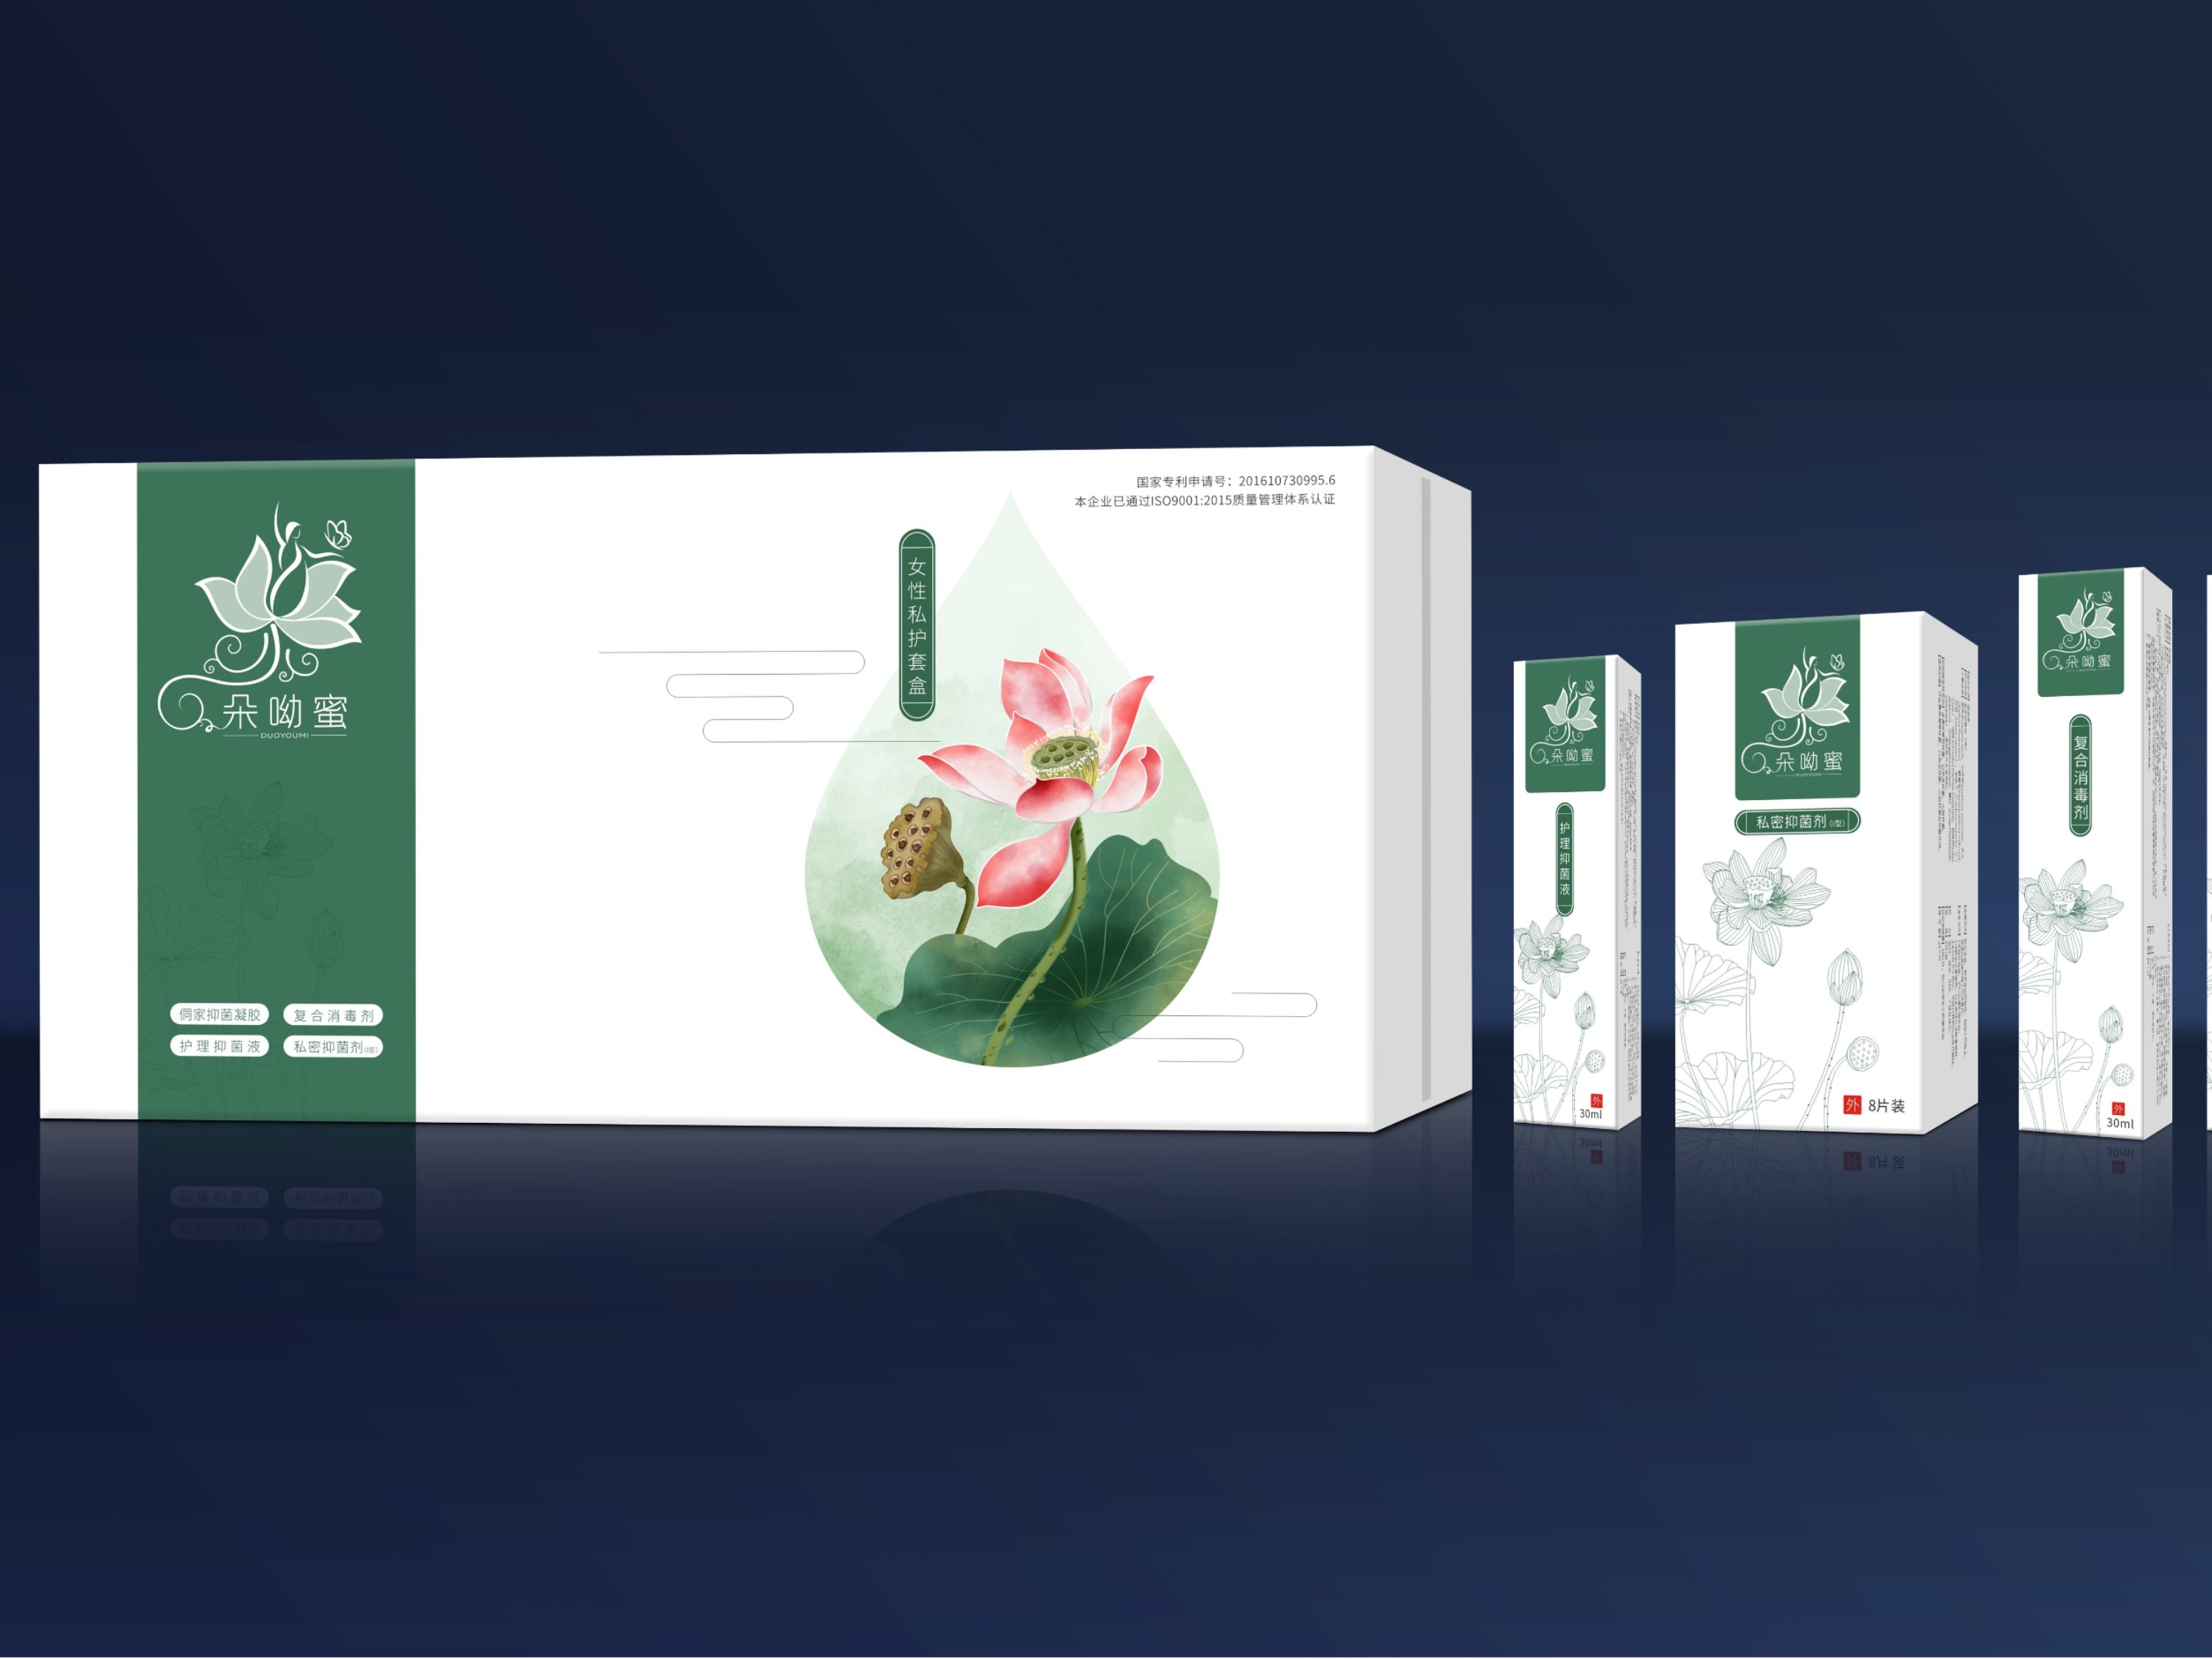 朵呦蜜精品礼盒-保健品包装定制